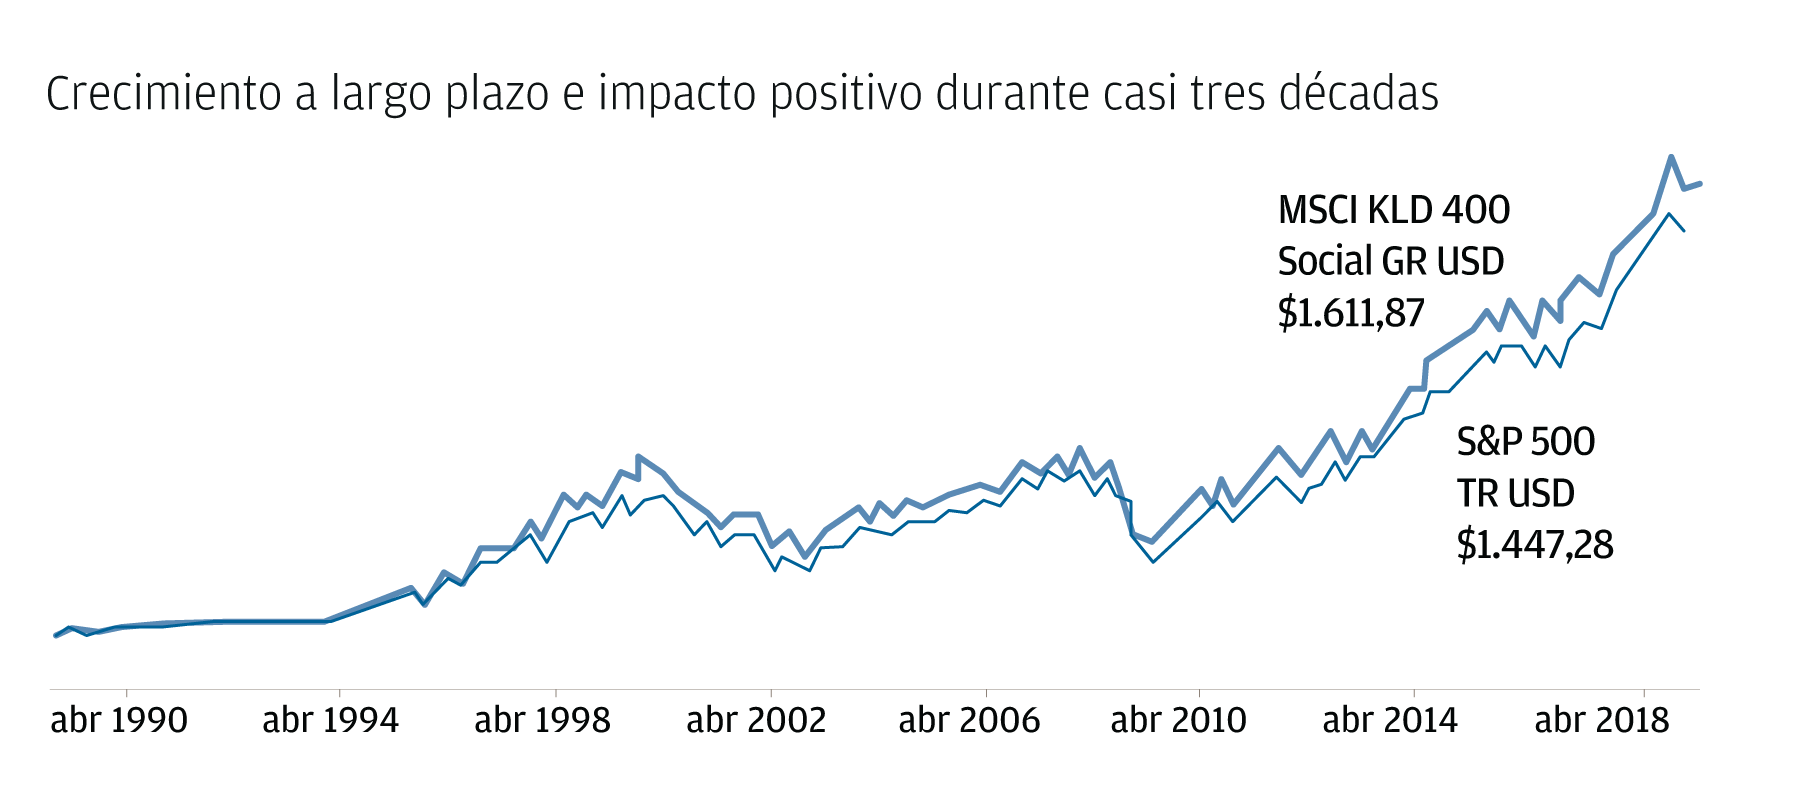 Chart 1: Crecimiento a largo plazo e impacto positivo en casi tres décadas.